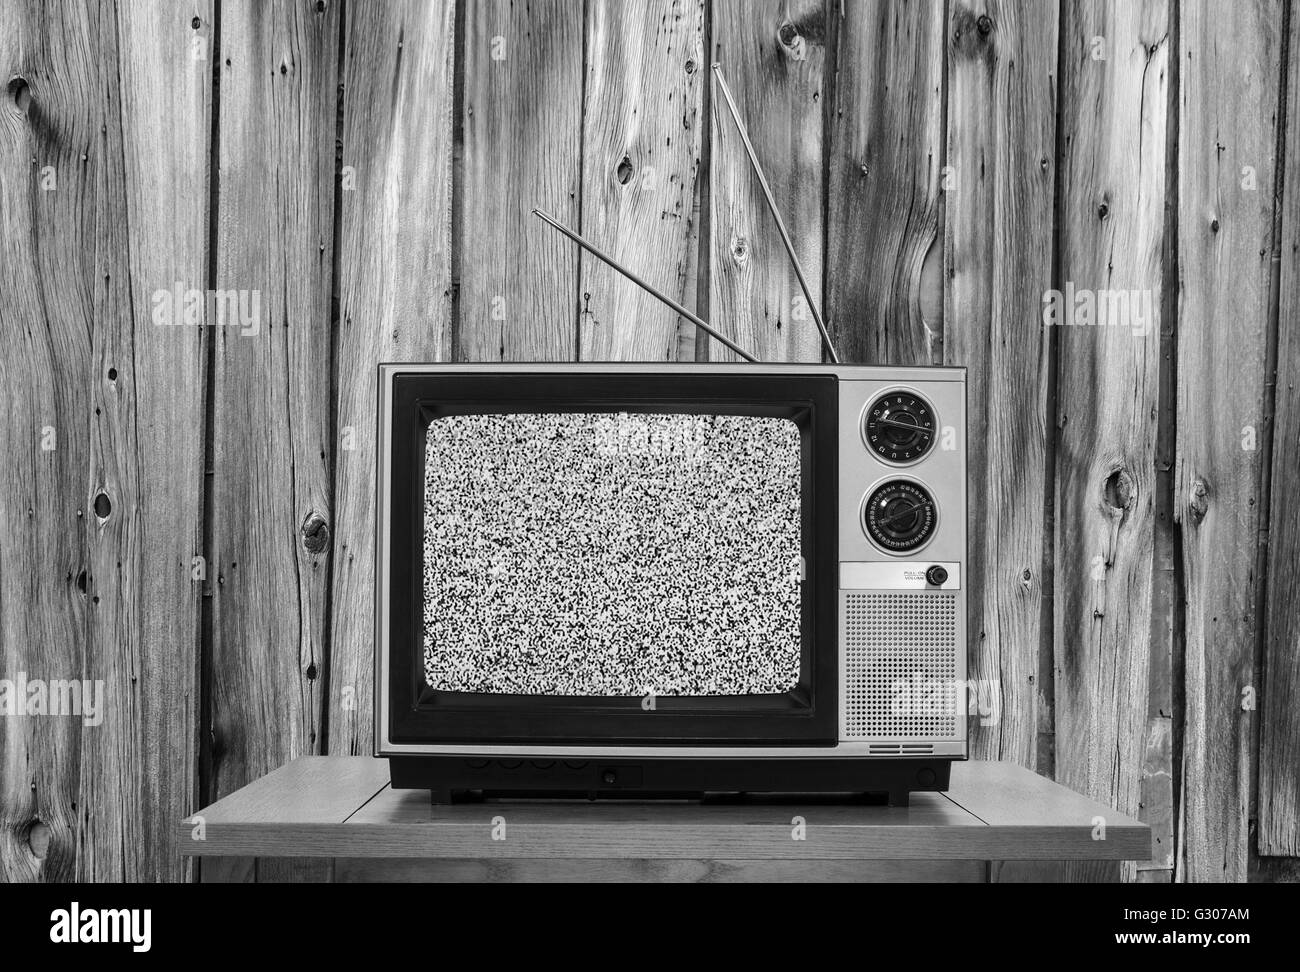 La télévision vintage avec mur en bois rustique et d'écran statique en noir et blanc. Banque D'Images